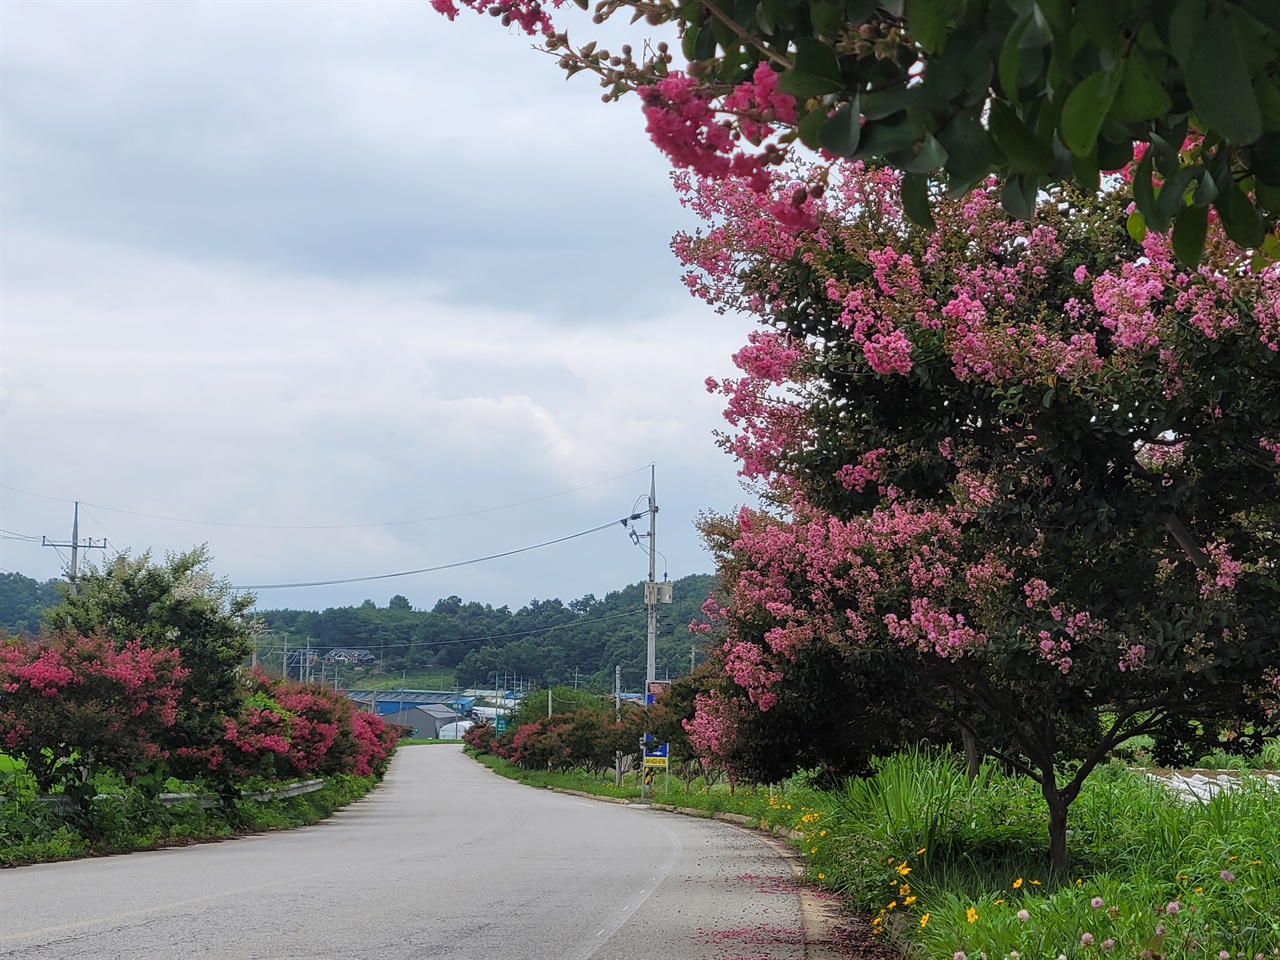 분홍색 배롱나무꽃이 환상적이다. 홍성에서 갈산을 지나는 지방도에는 배롱나무가 심어져 있다. 그러면서, 배롱나무꽃이 개화가 시작되면서, 이곳을 지나는 시민들에게 힐링을 선사하고 있다.